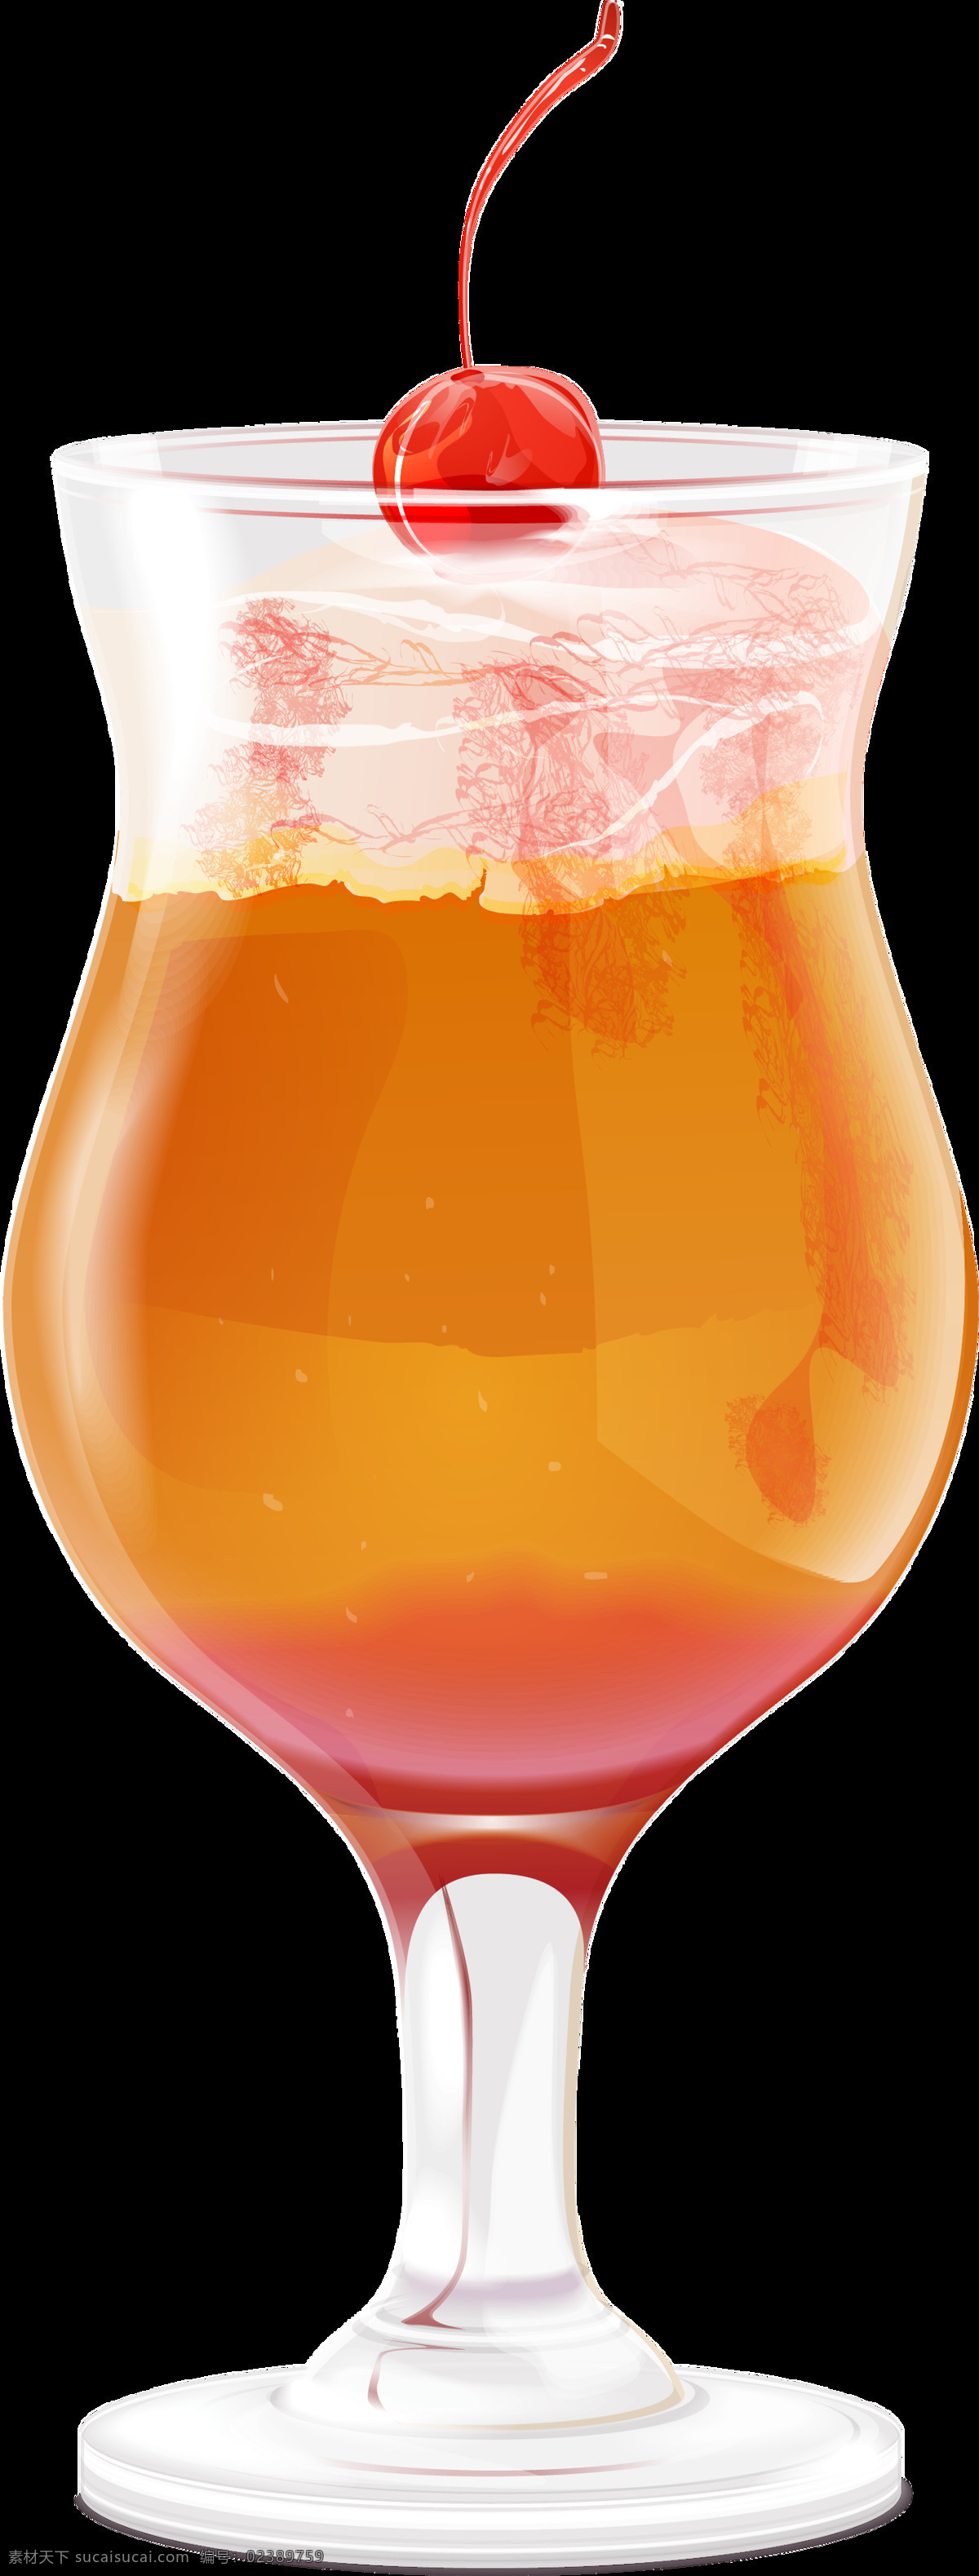 冰凉 夏日 清爽 橙汁 透明 饮料 冰块 玻璃杯 橙色 免扣素材 透明素材 樱桃 装饰图片